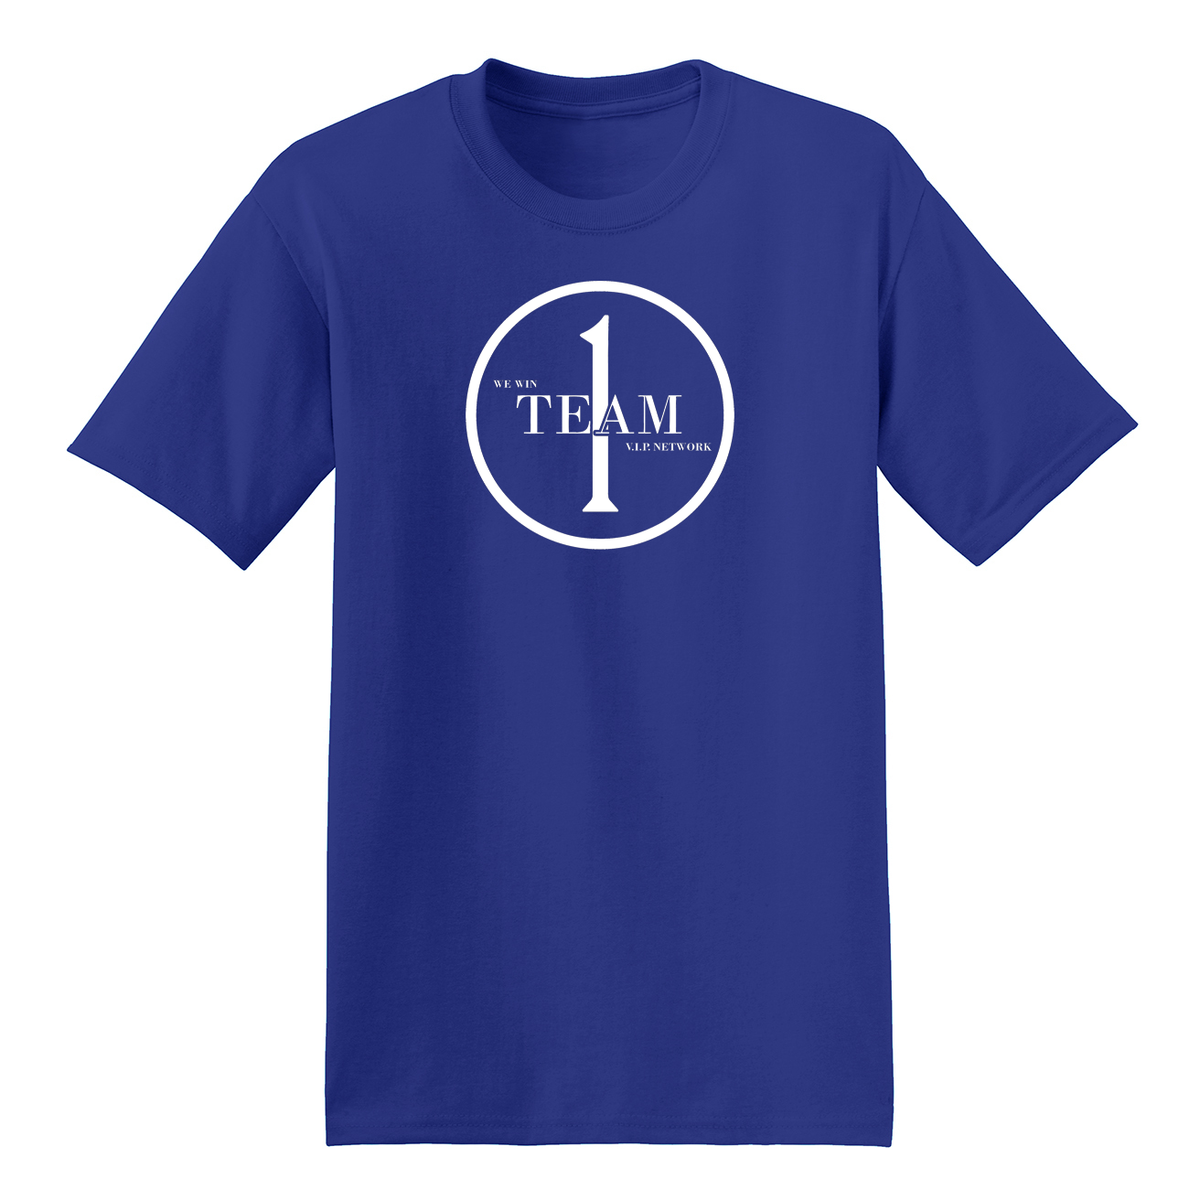 1team T-Shirt